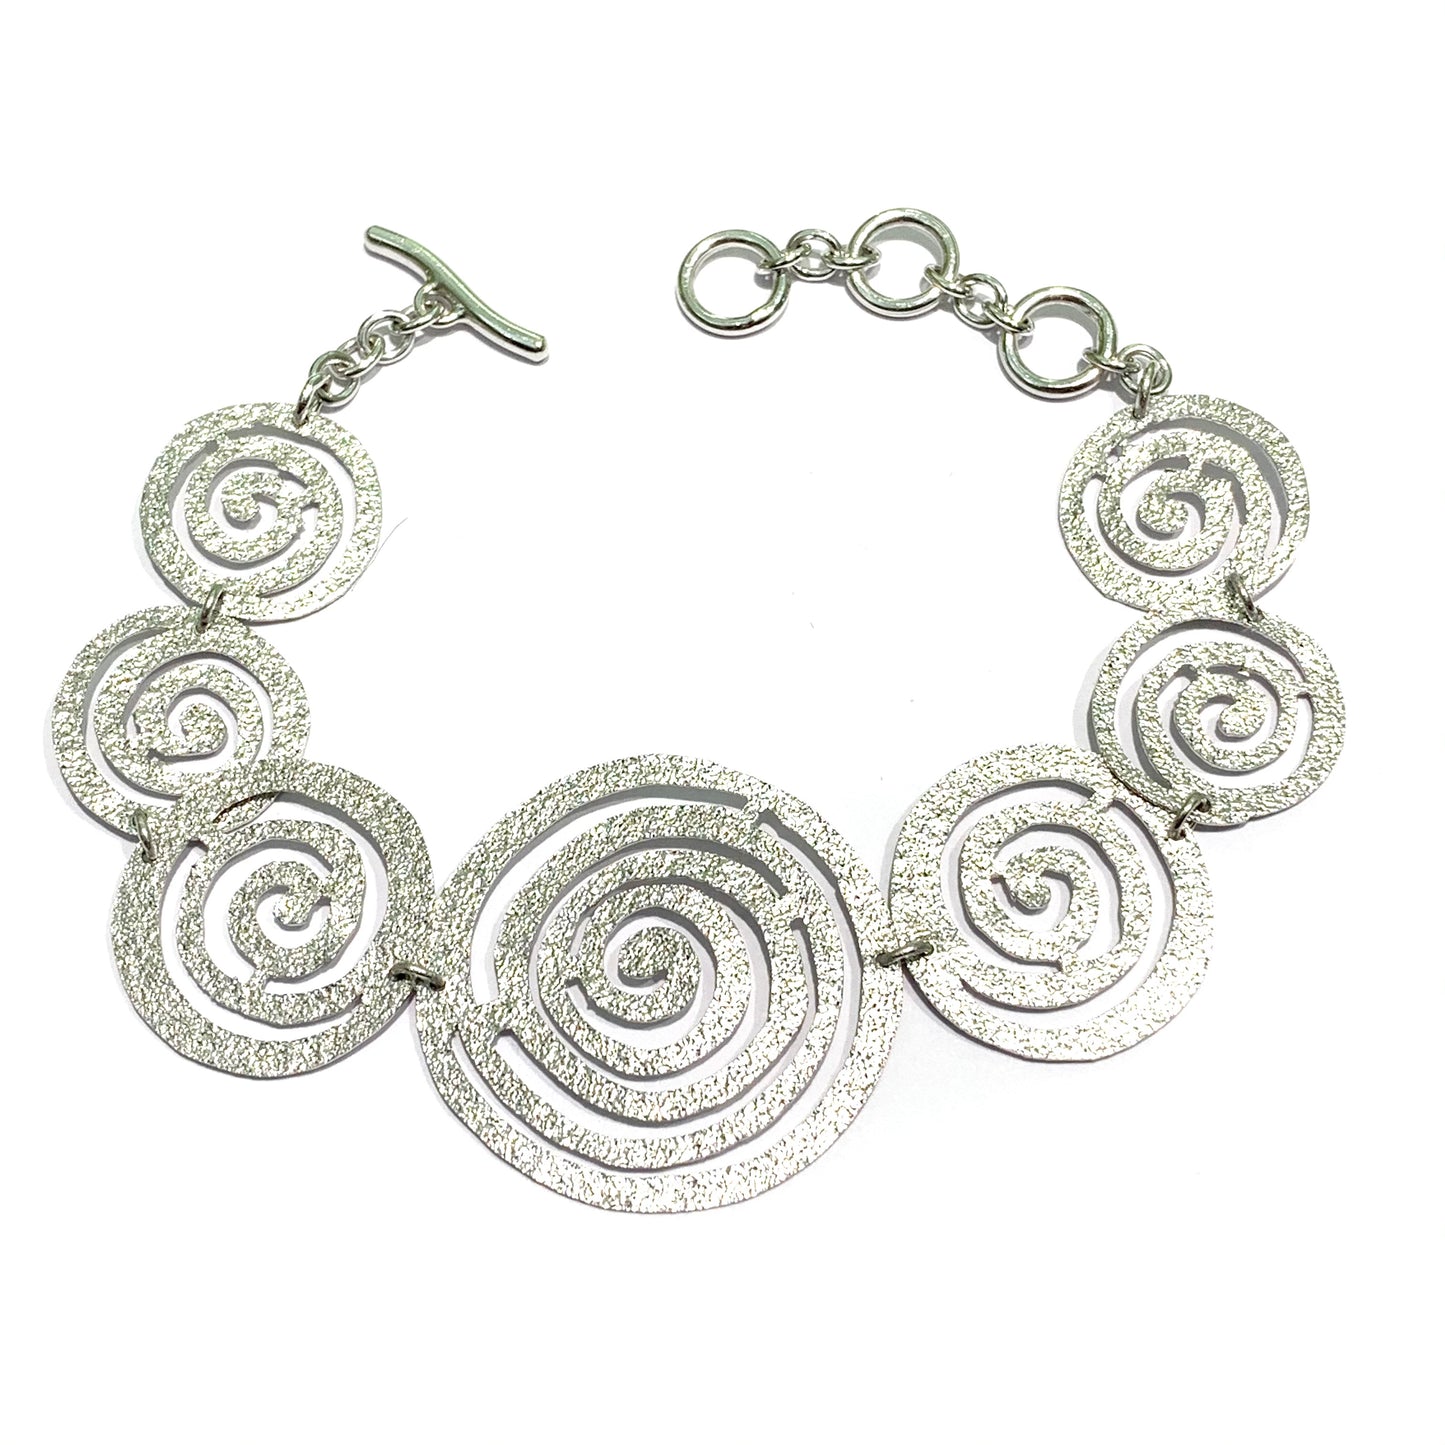 Bracciale in argento satinato con cerchi a forma di spirale.  Lunghezza regolabile da 16 cm fino a 19 cm.  Larghezza spirale più grande centrale 3 cm.